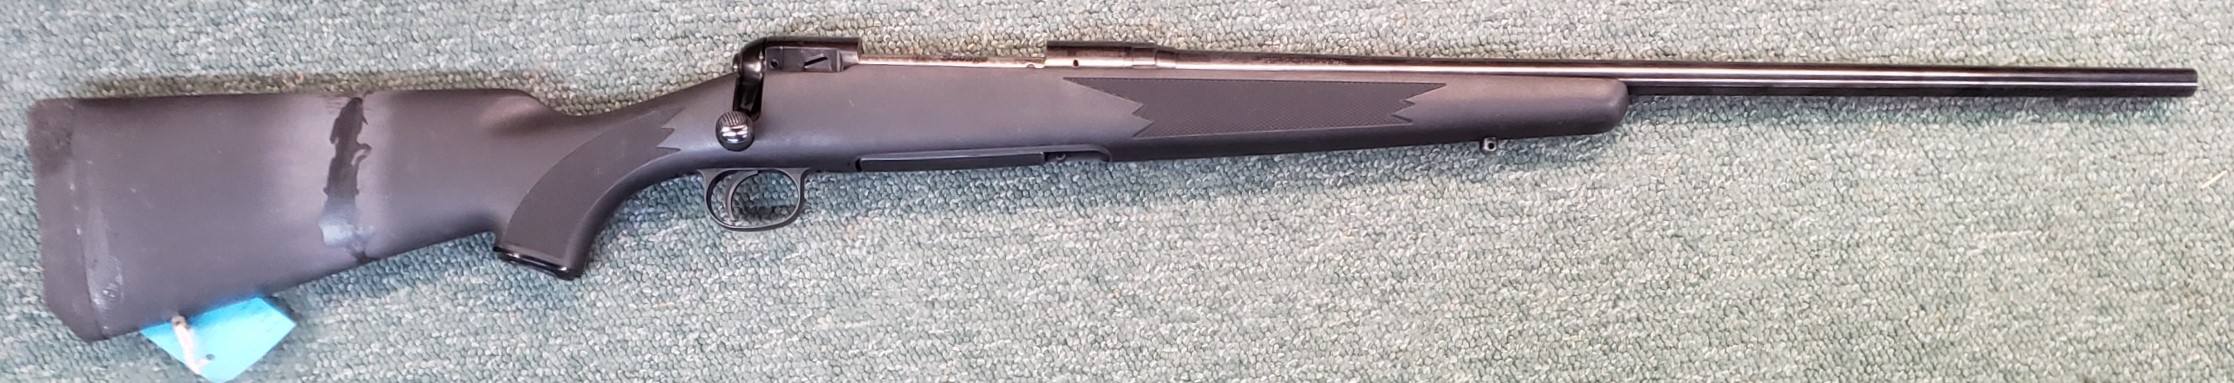 Savage 111 7mm rem. (used)